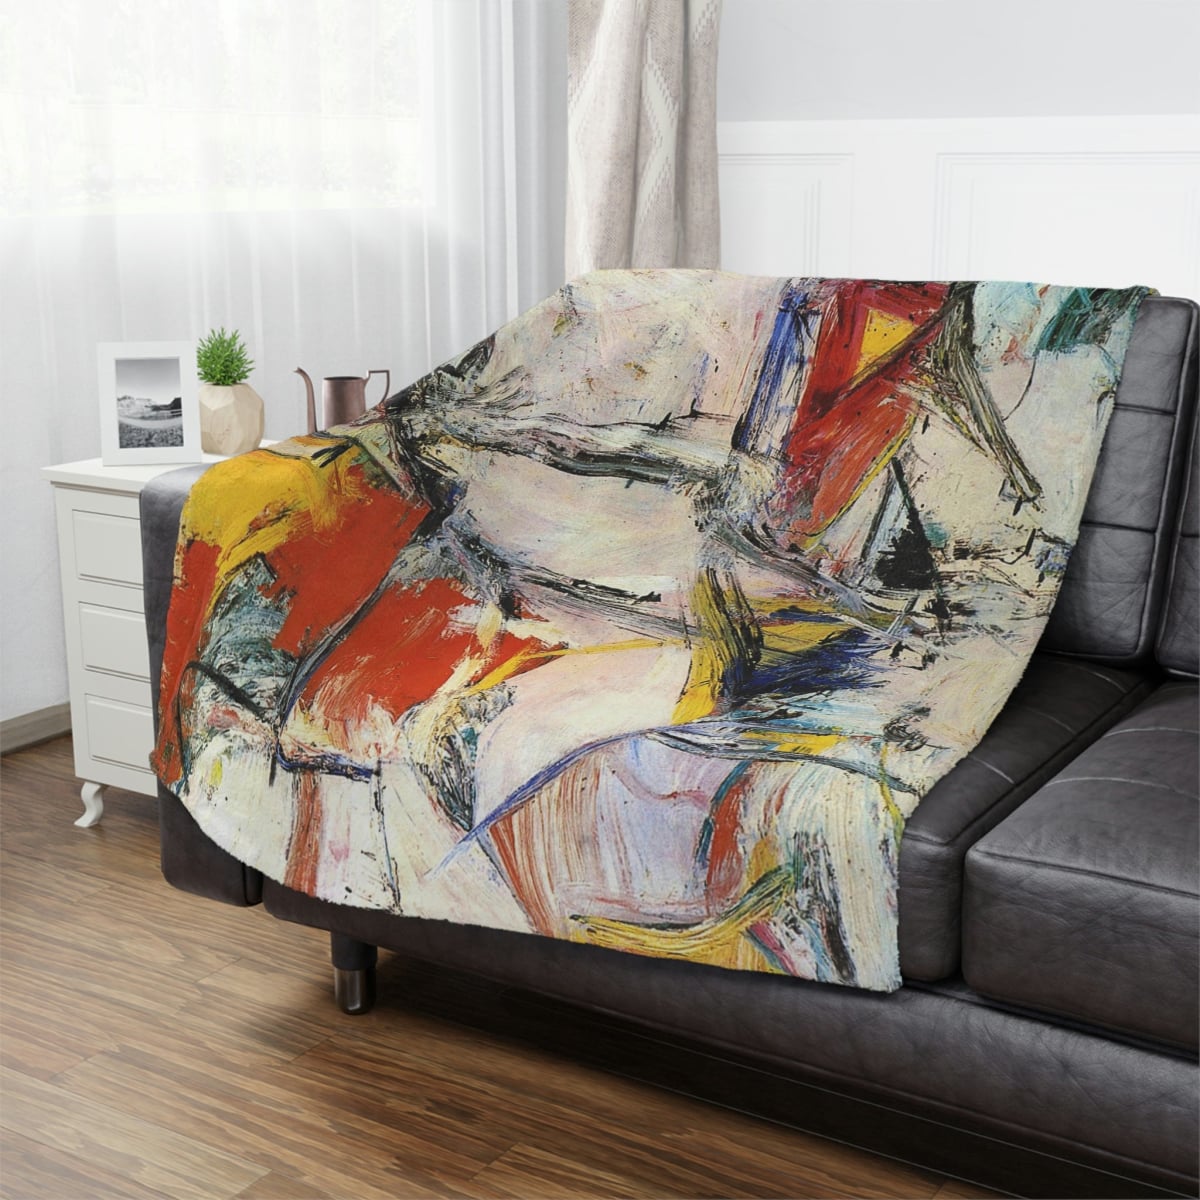 Cozy Home Decor - Willem de Kooning Inspired Blanket